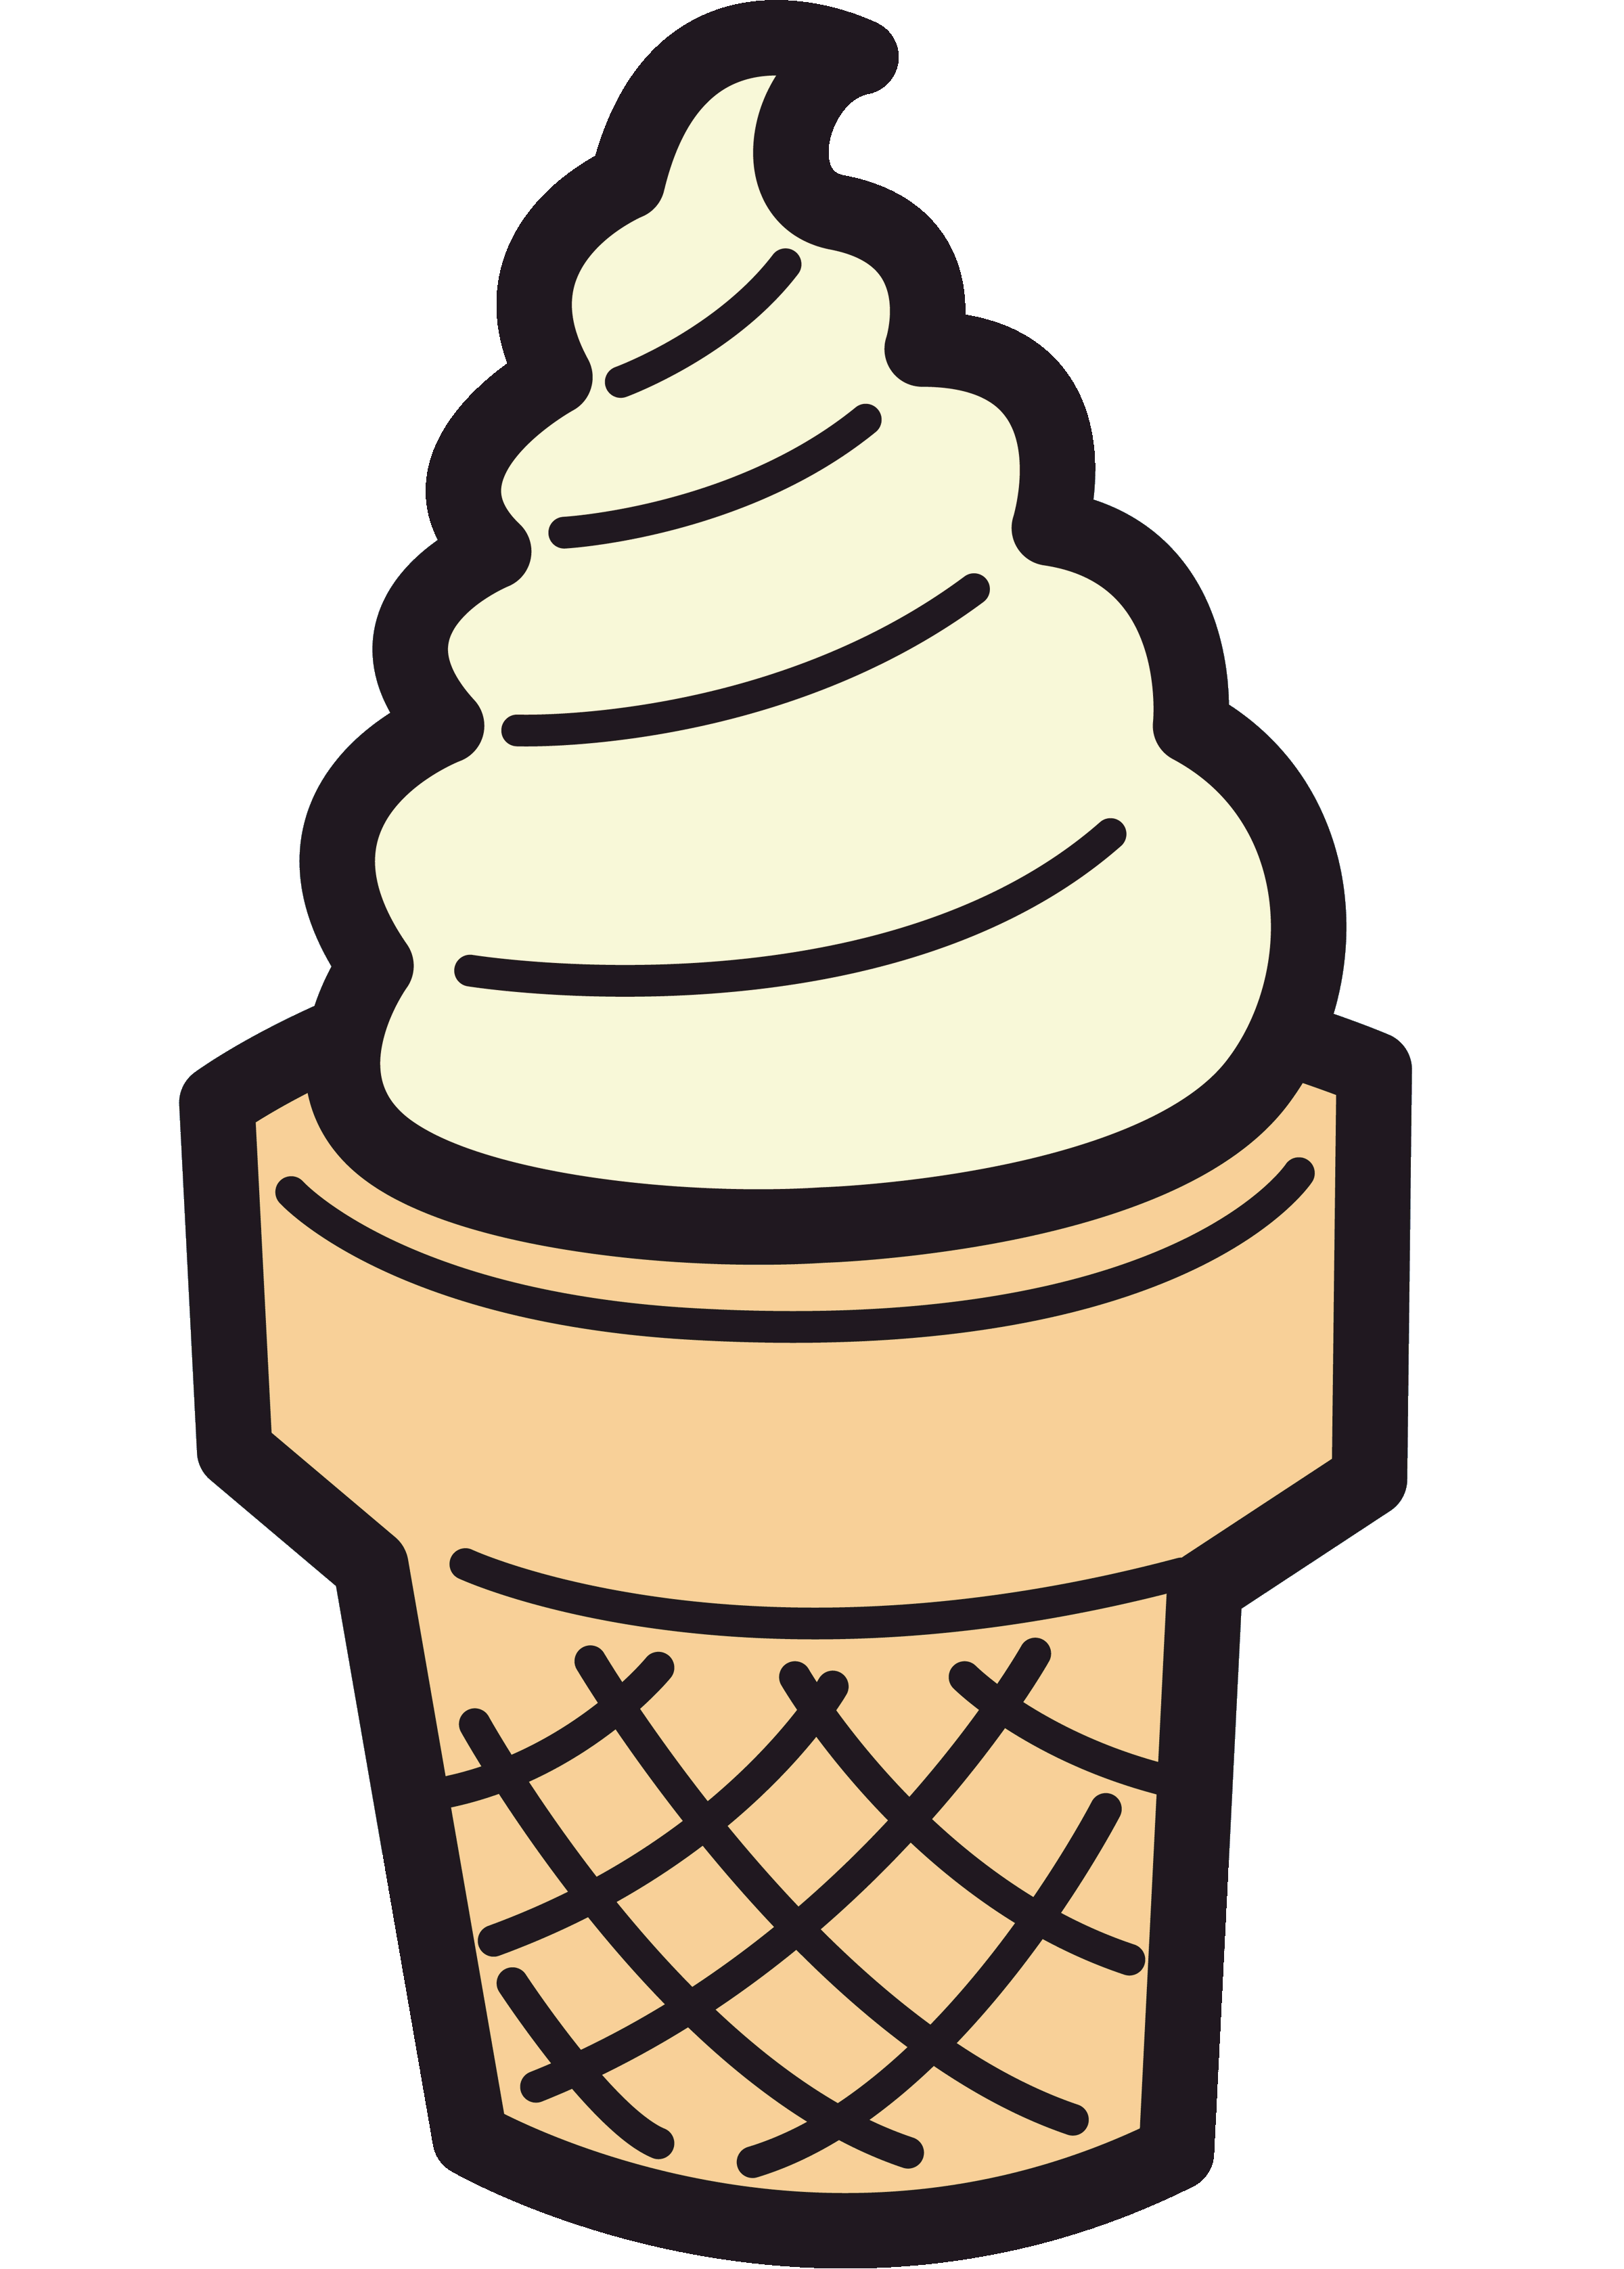 Ice cream sundae.